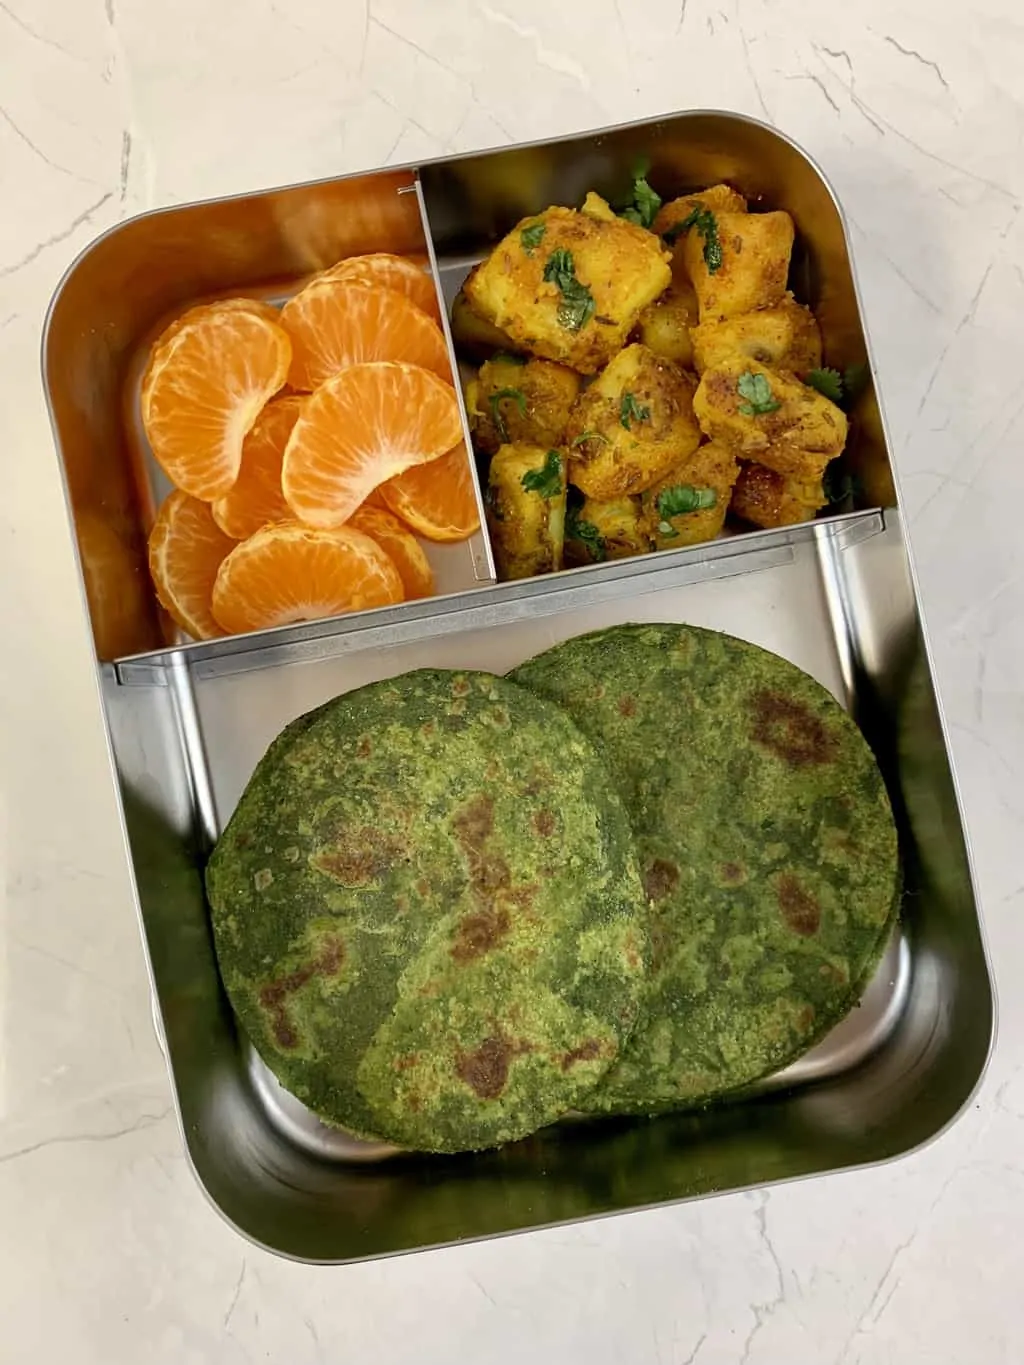 lunchboxidea6 spinach chapati